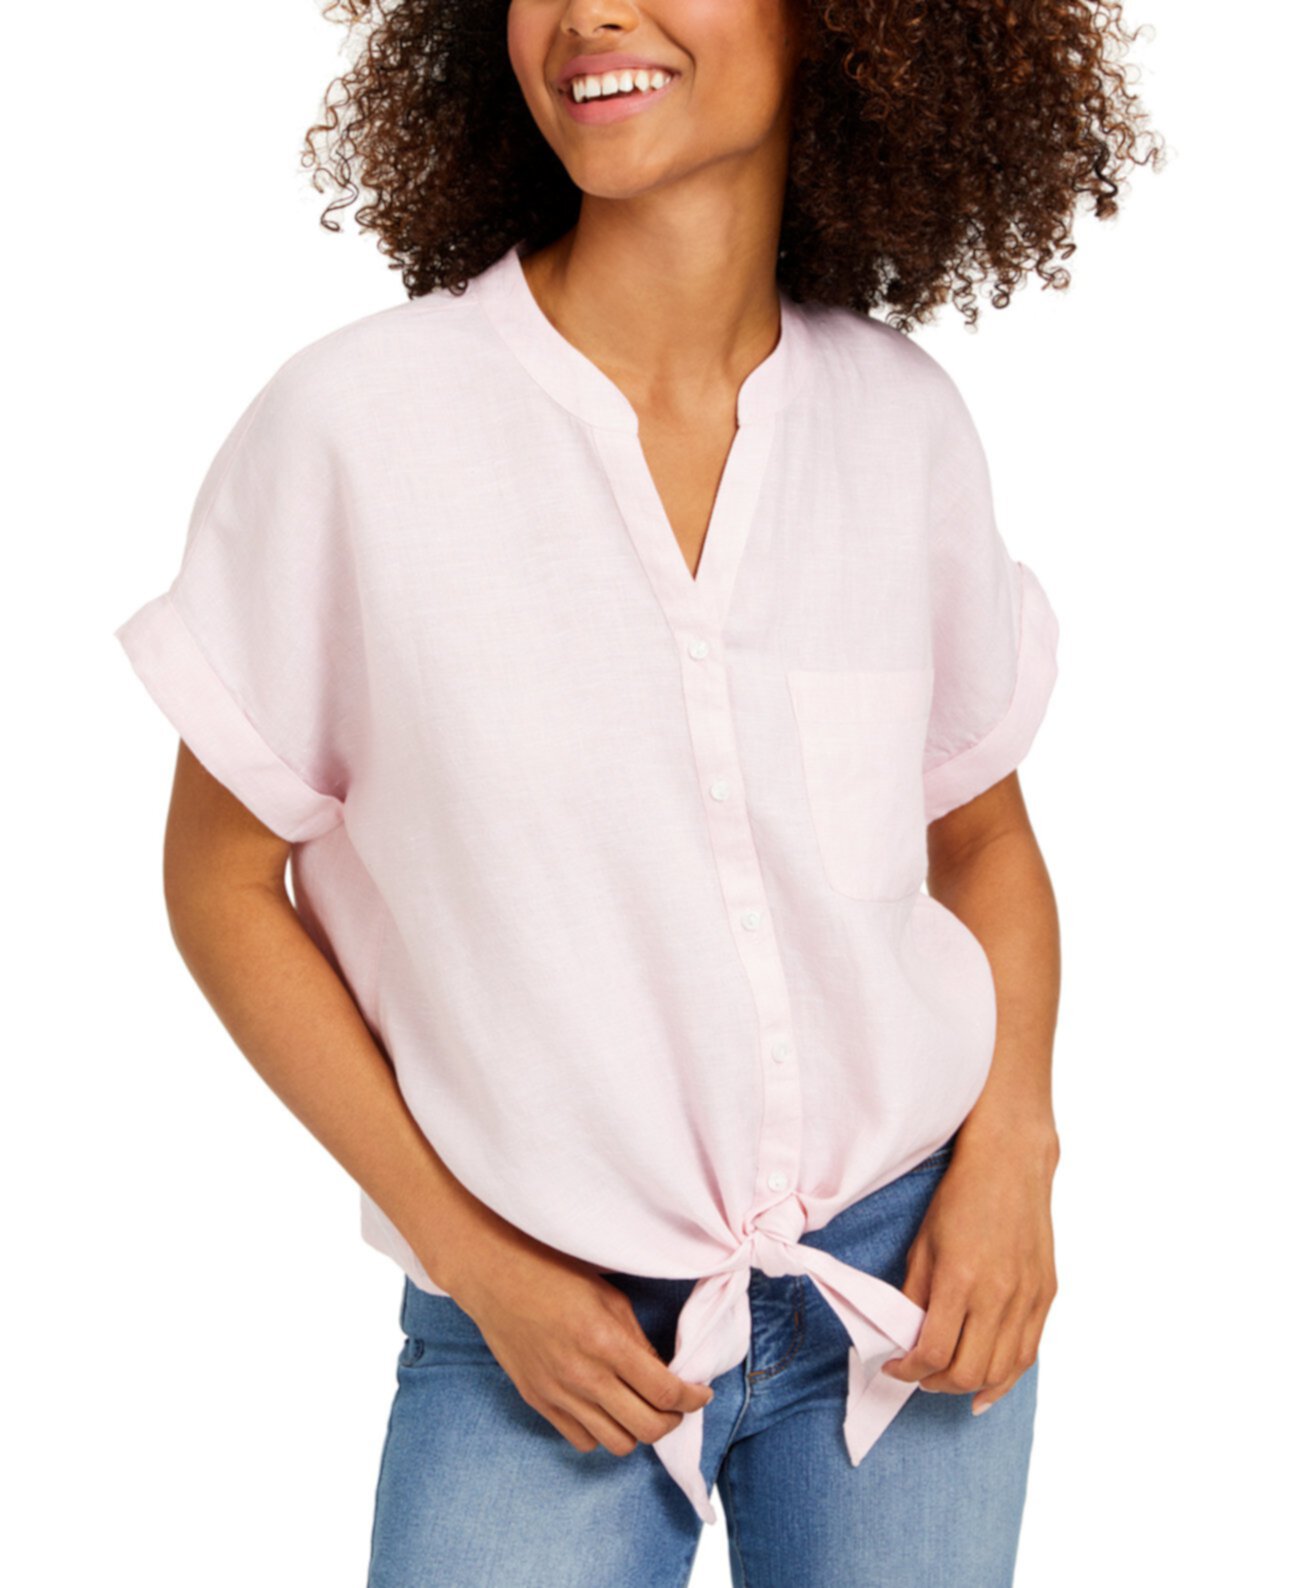 Миниатюрная льняная рубашка с завязкой спереди, созданная для Macy's Charter Club